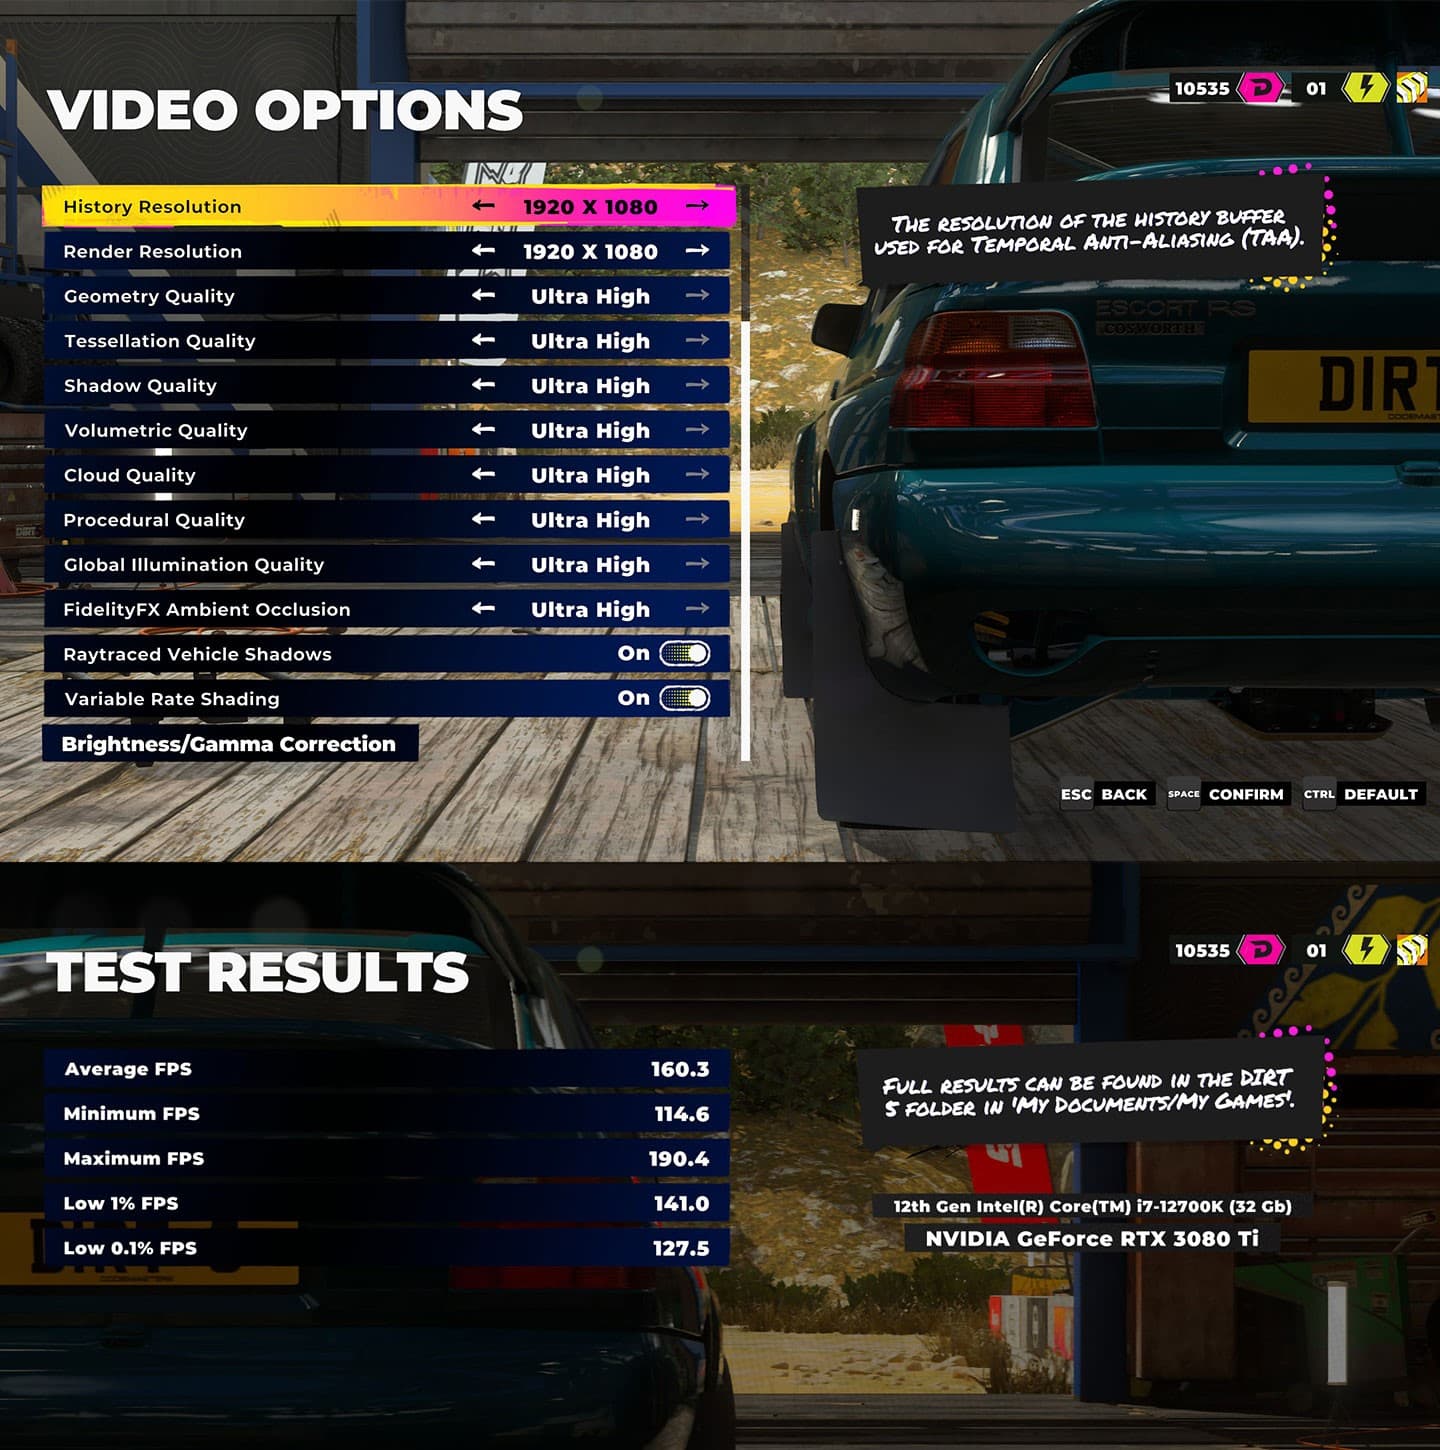 遊戲《Dirt 5》將解析度設置至 Full HD，內建效能測試運行後獲得平均 160.3 fps 的成績。